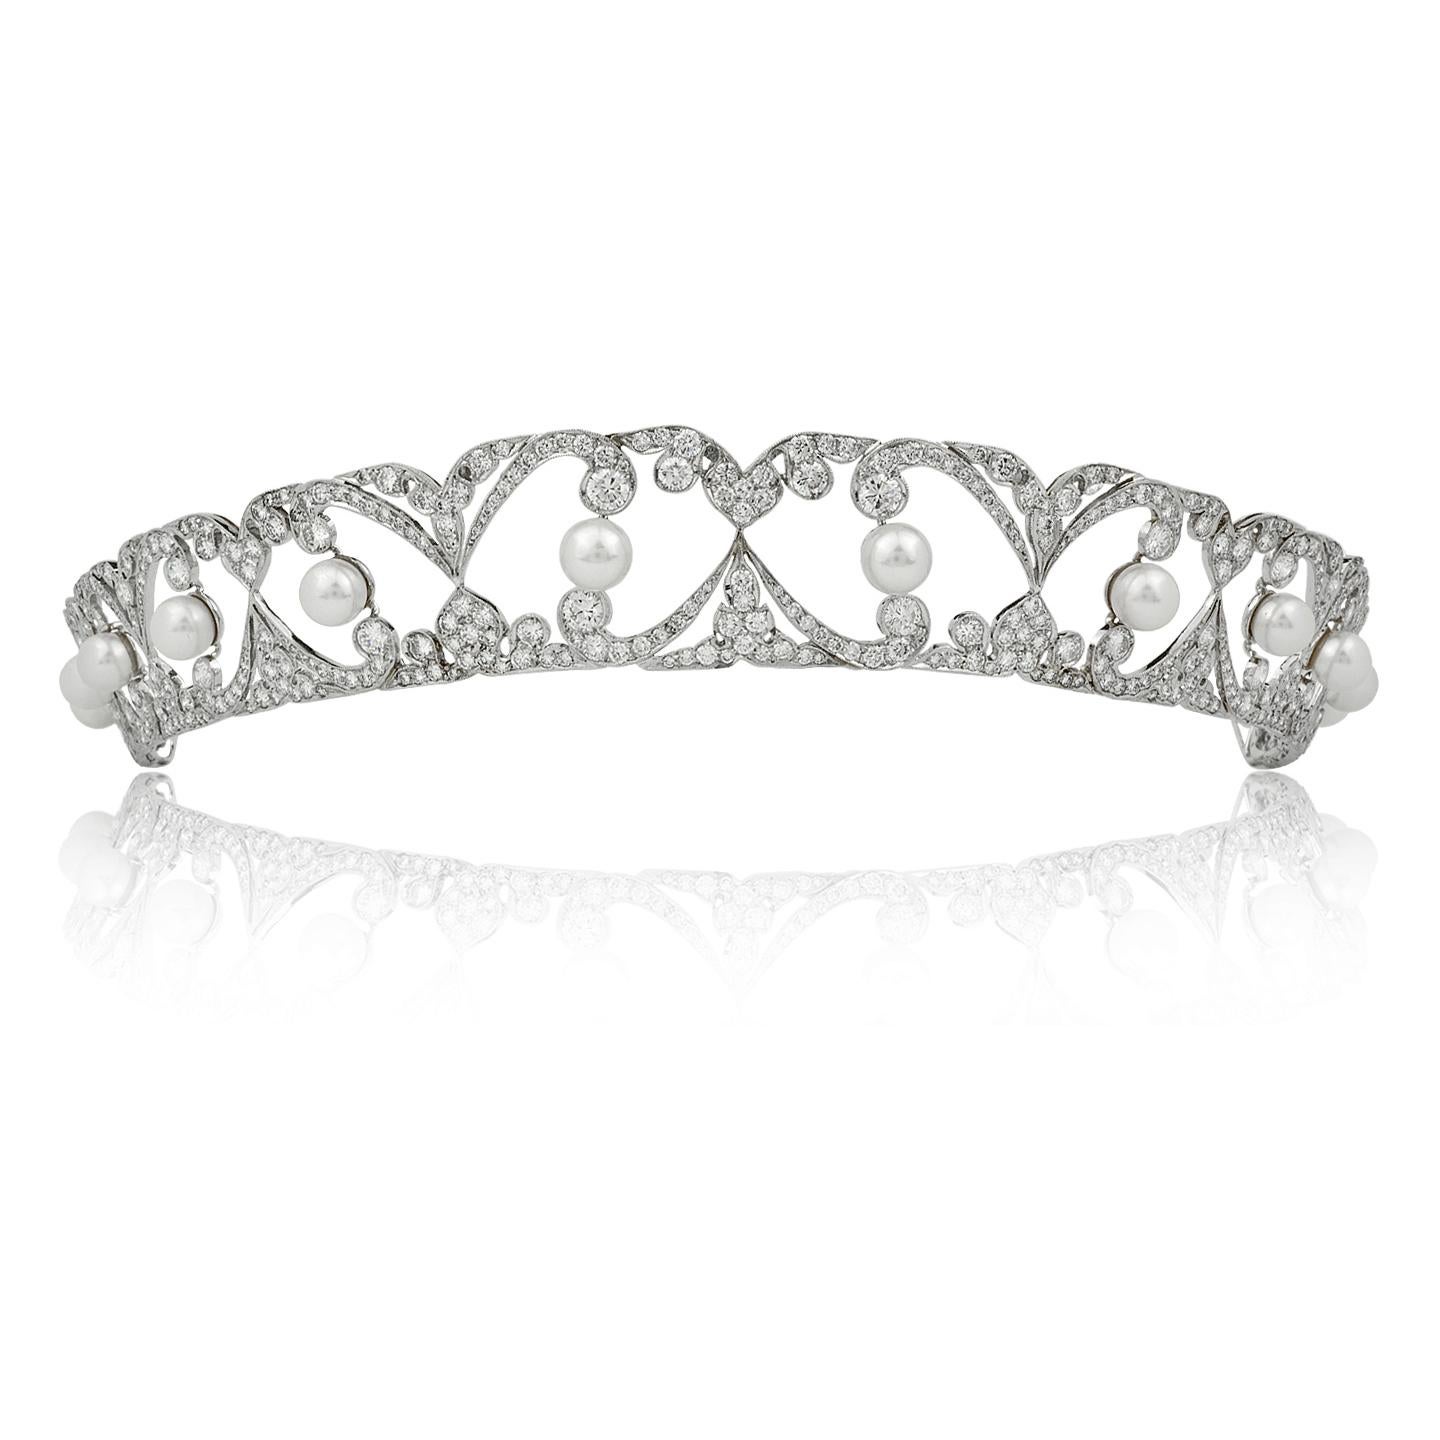 Eine elegante Stephen Russell Platin-Tiara mit Diamanten und Perlen im edwardianischen Design, entworfen als eine Reihe von gegenüberliegenden Bögen im arabesken Stil des 18. Jahrhunderts, besetzt mit 10 perfekten weißen Perlen.
Diamant- und